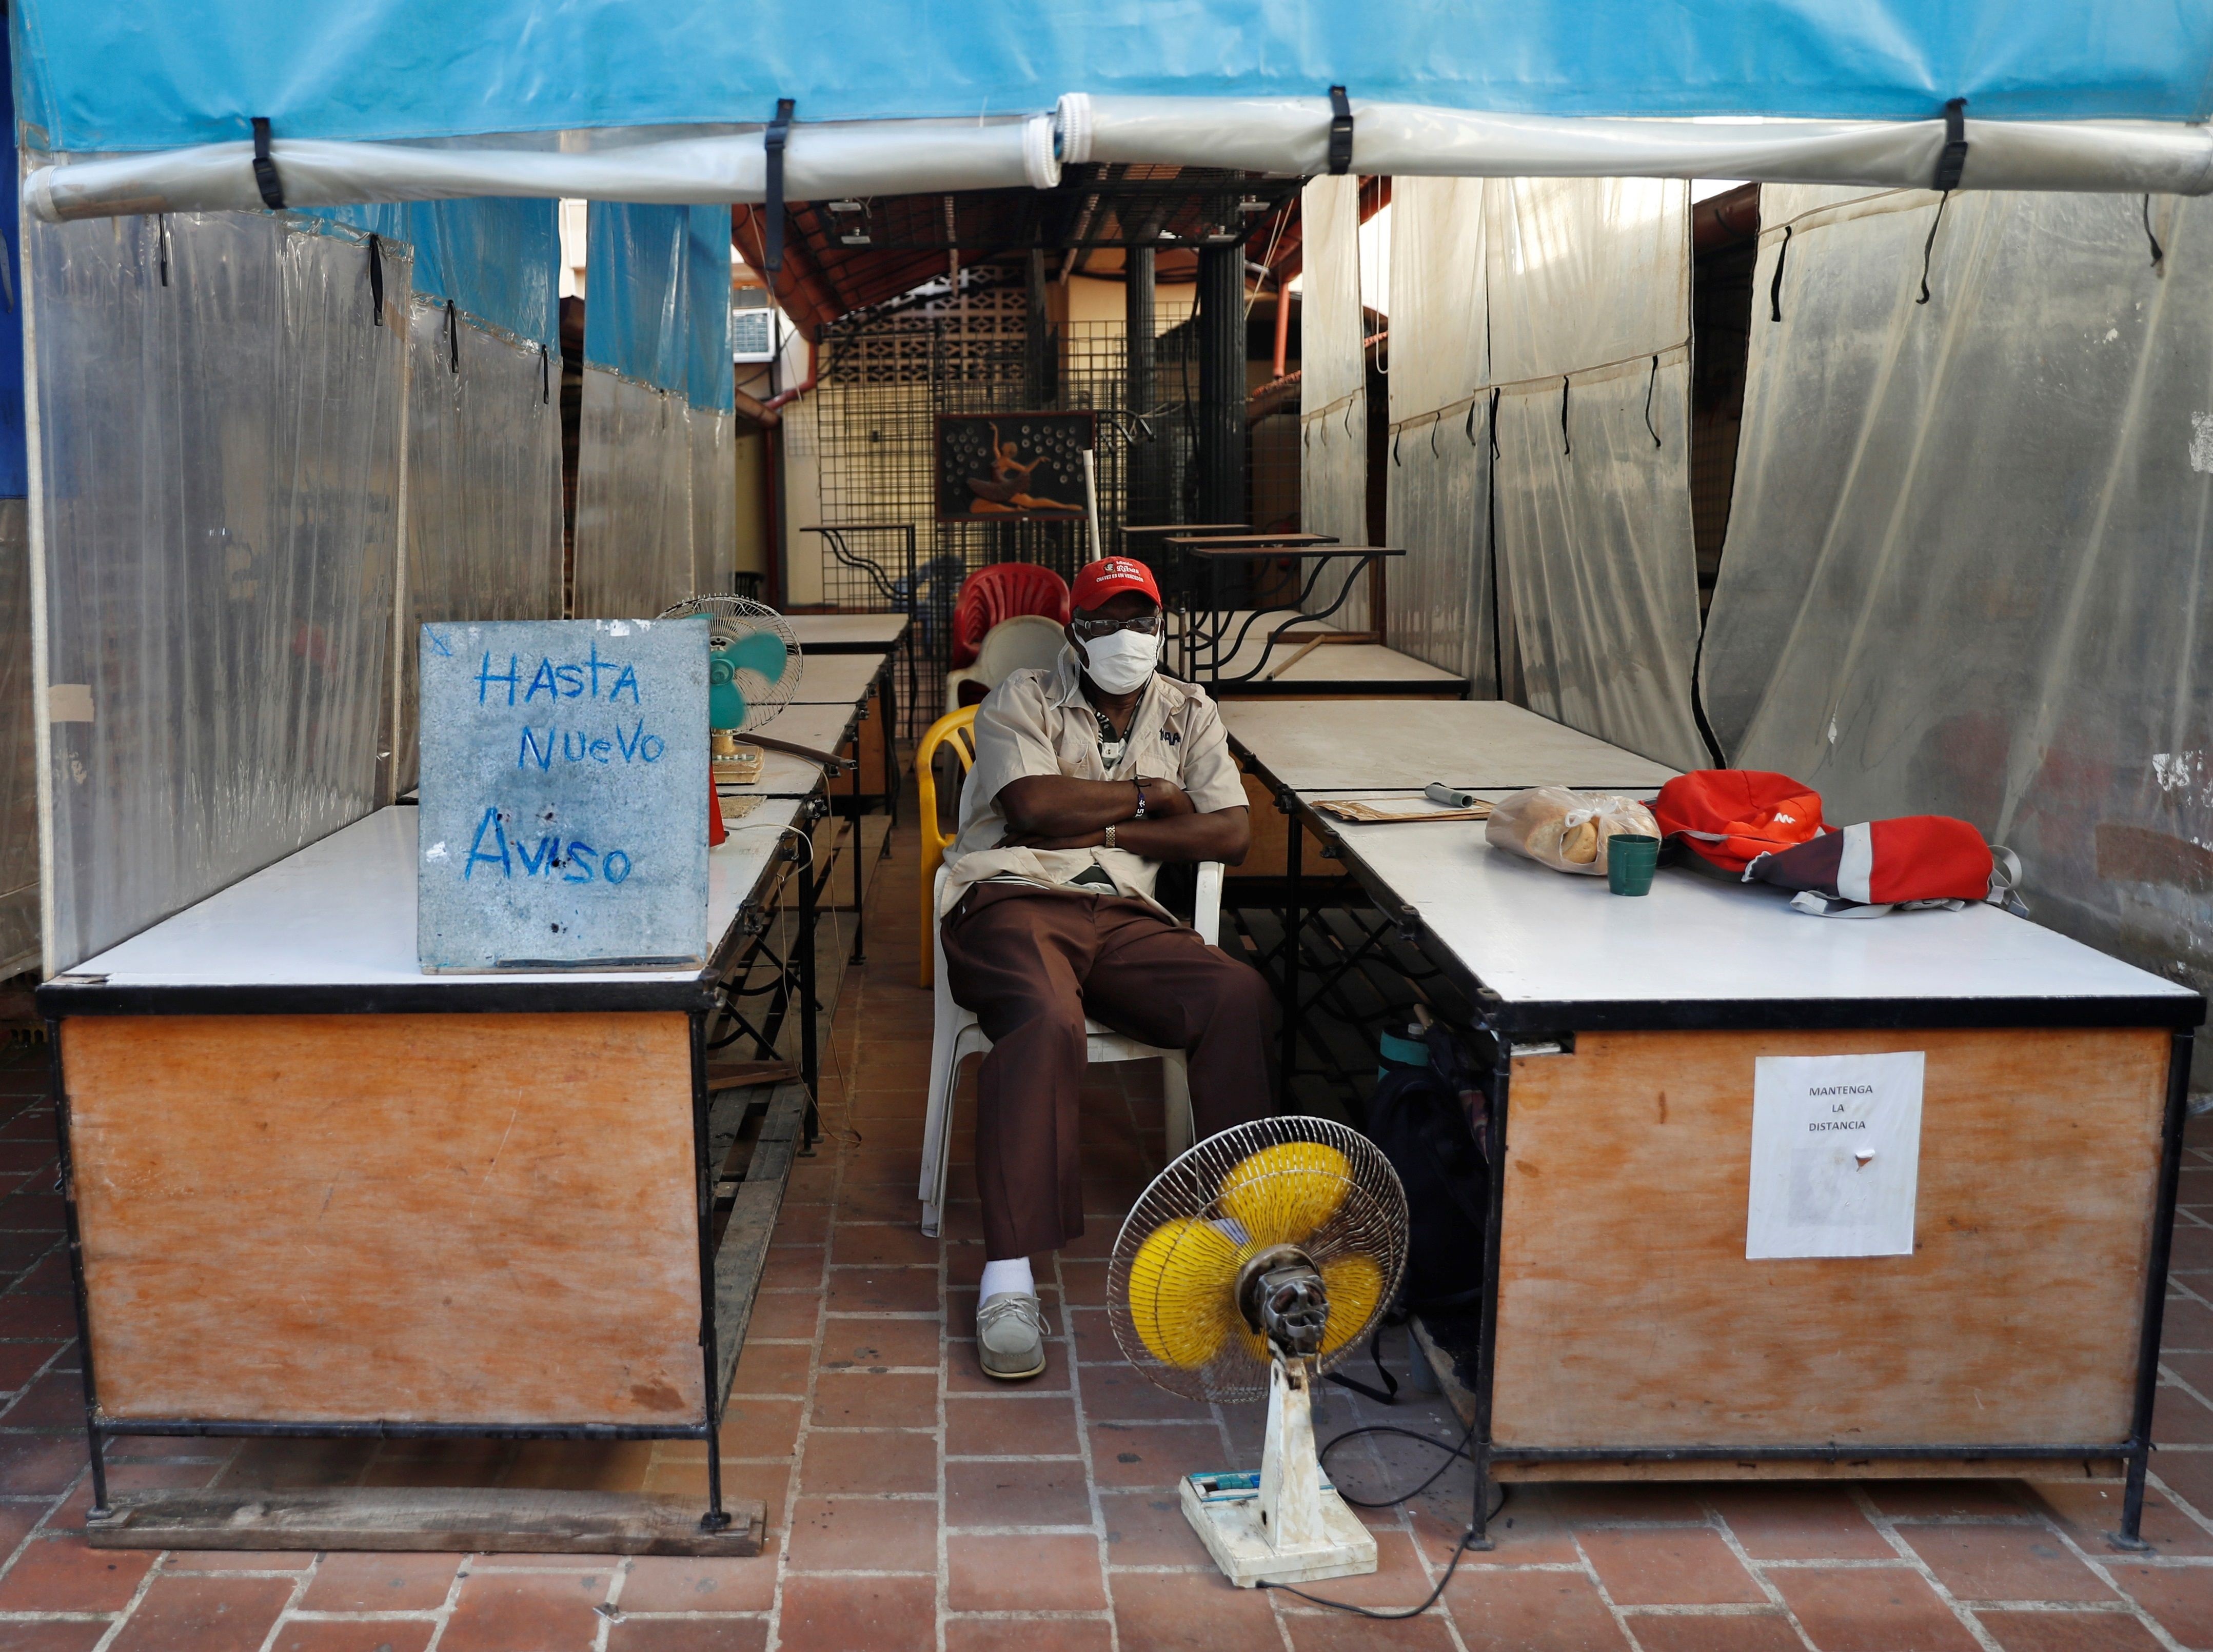 Un hombre custodia el local sede de la feria de calle Obispo, cerrada "hasta nuevo aviso", en La Habana (Cuba).